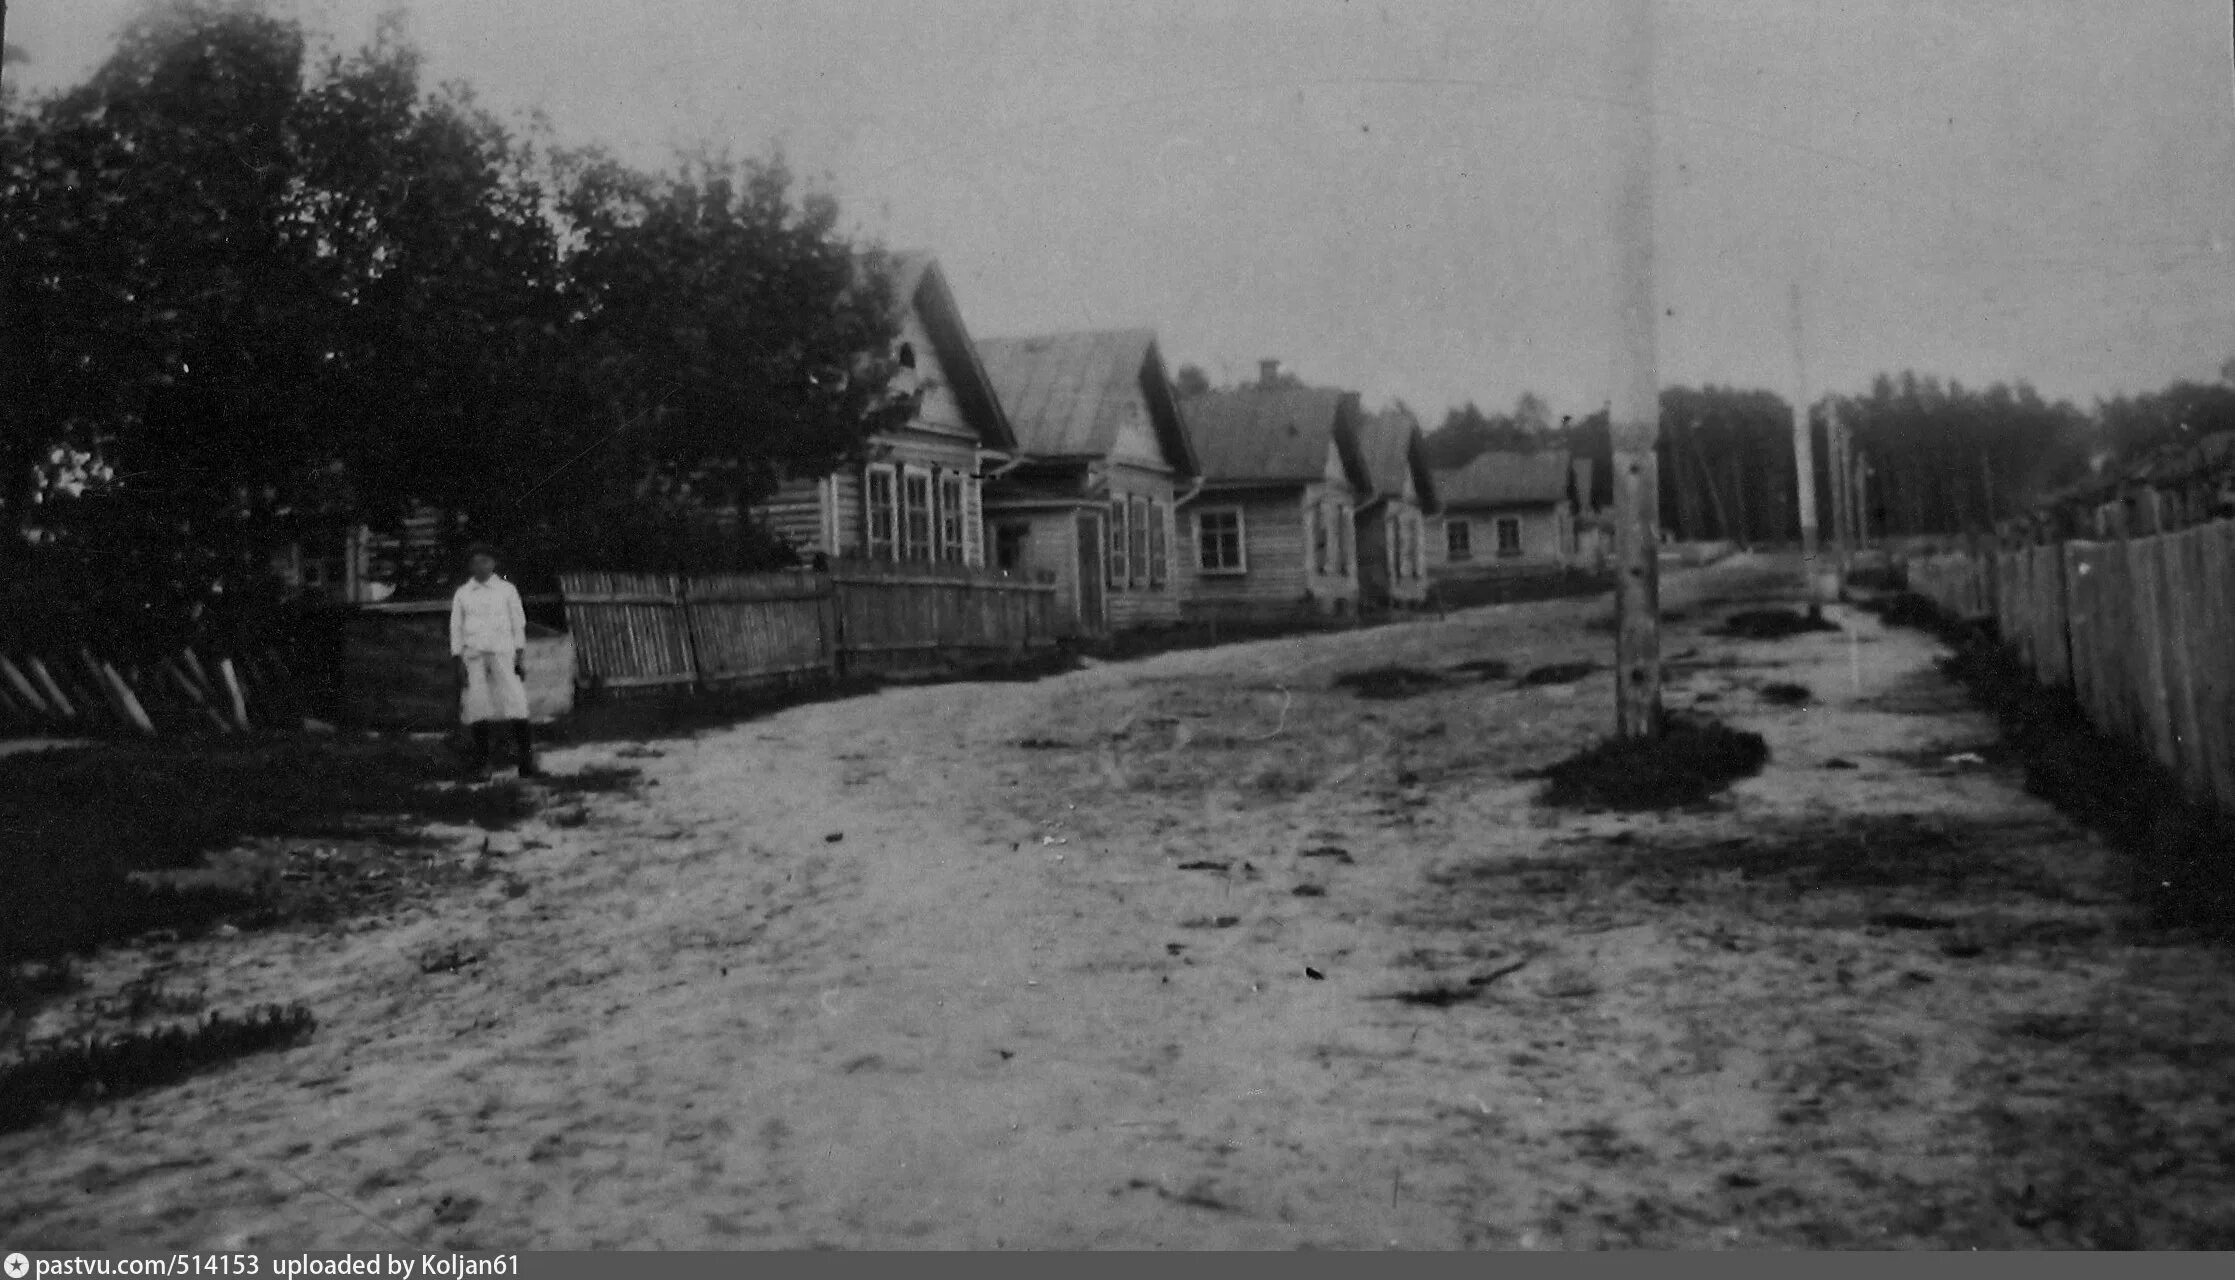 Деревни в 30 е годы. Деревня 1920 годов. Деревня в 1930-е годы. Деревня в 1920-е годы.